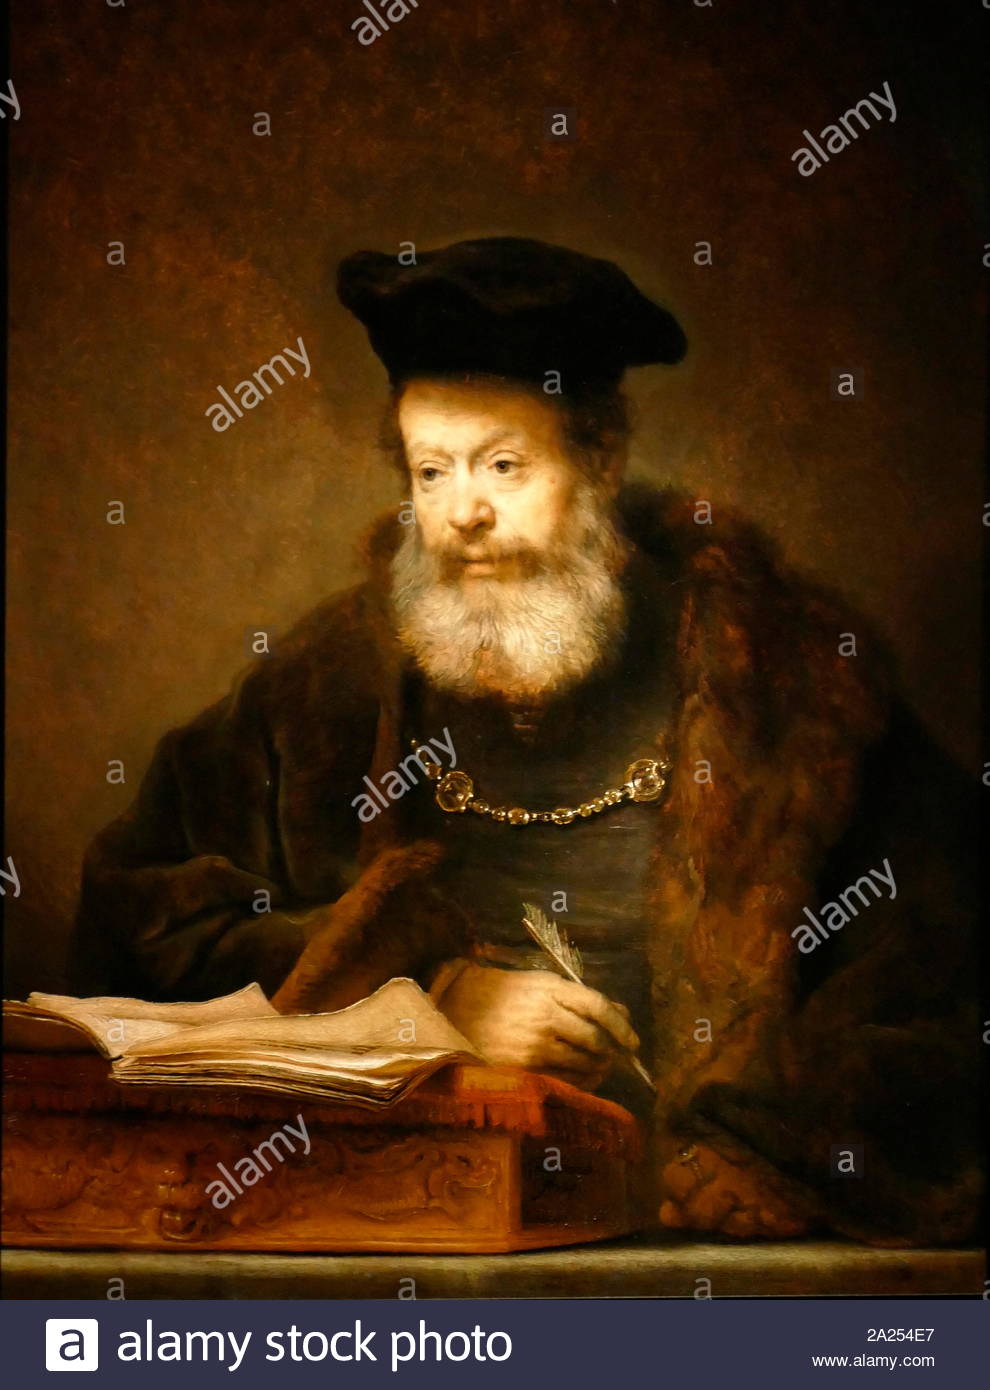 Le chercheur invité à sa table pour écrire. (1641) huile sur panneau peint par l'artiste hollandais, Rembrandt van Rijn (1606-69) Banque D'Images